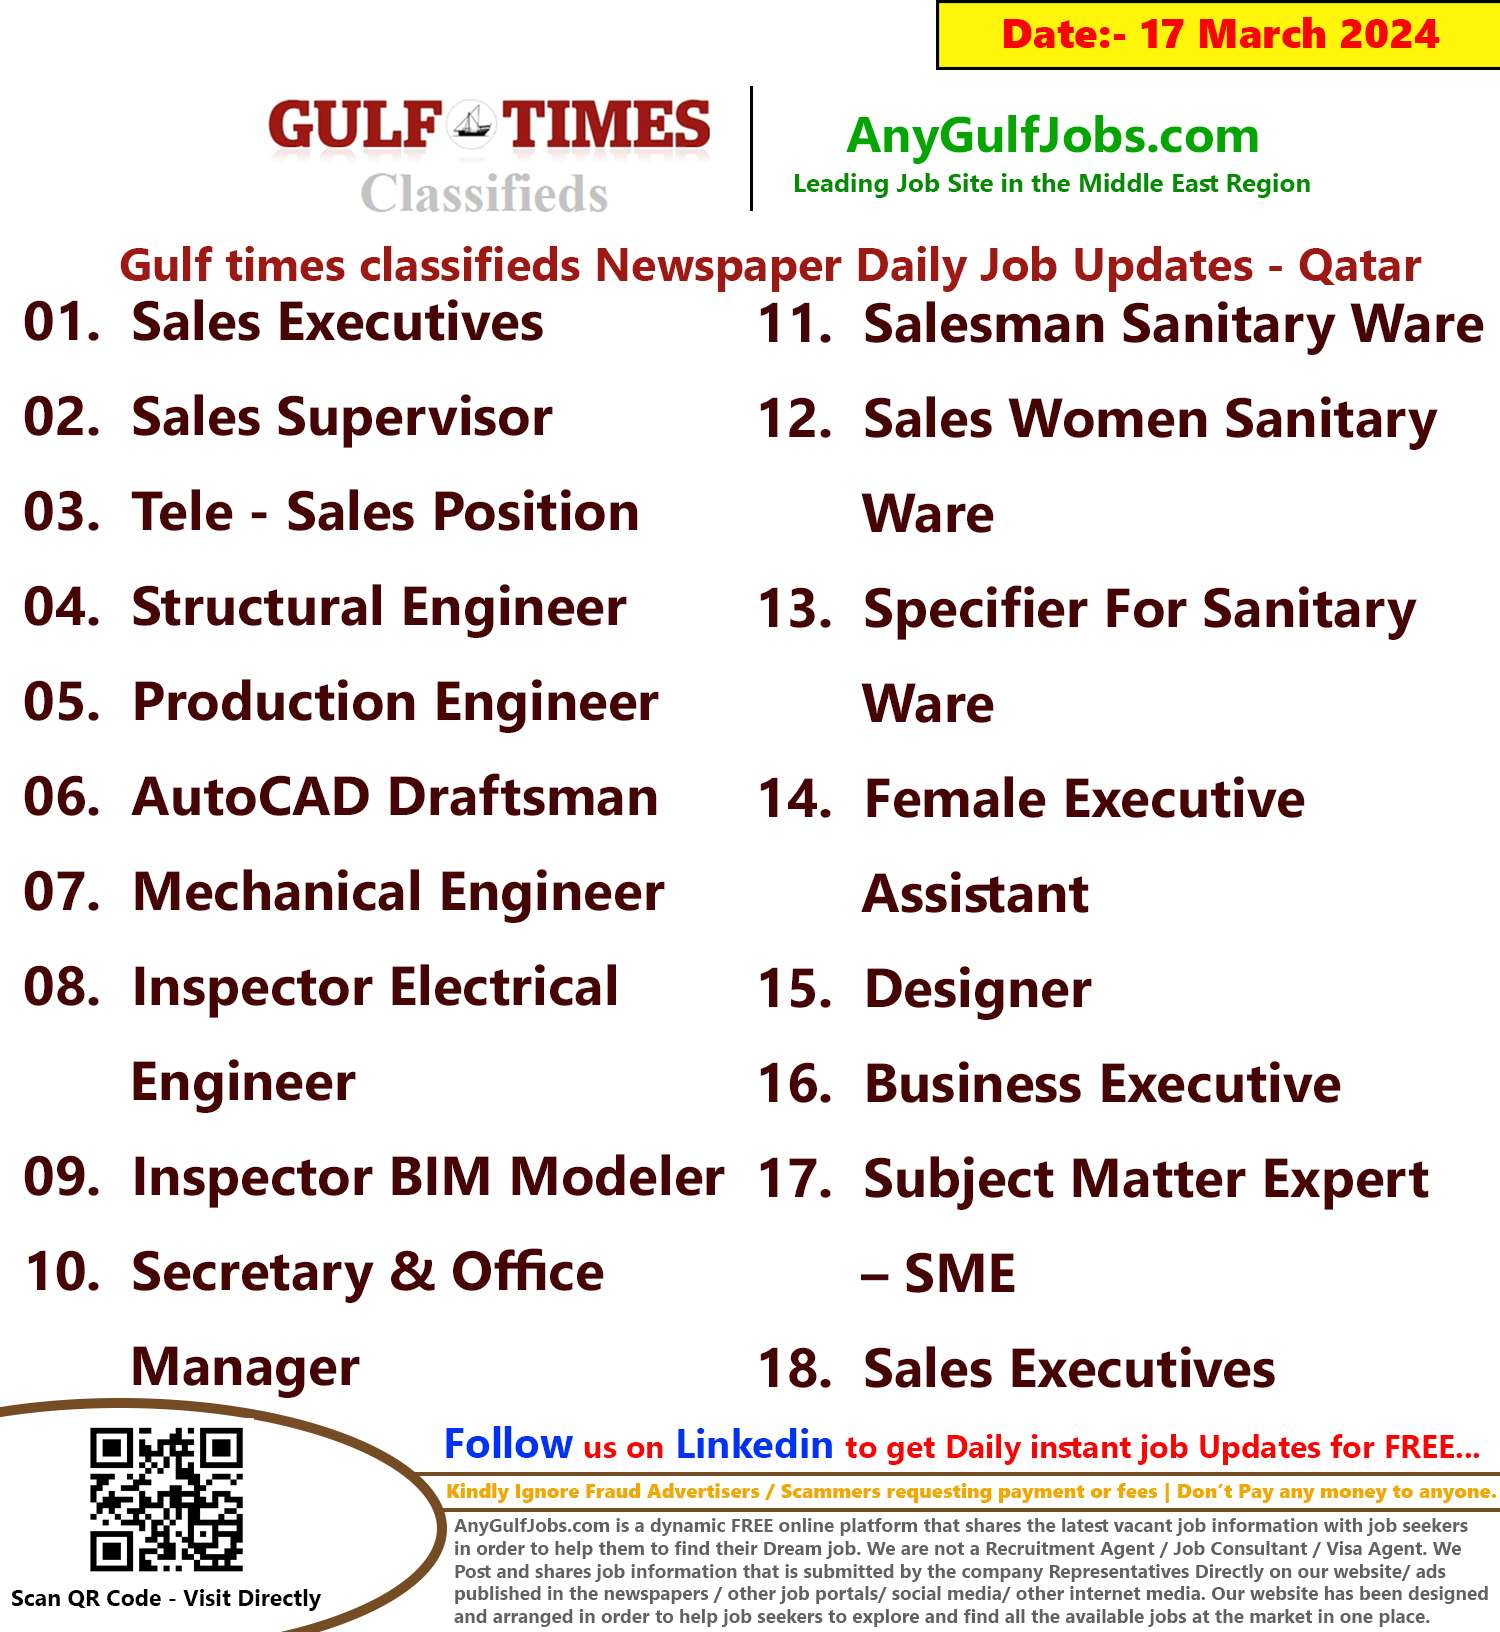 Gulf Times Classifieds Job Vacancies Qatar - 17 March 2024